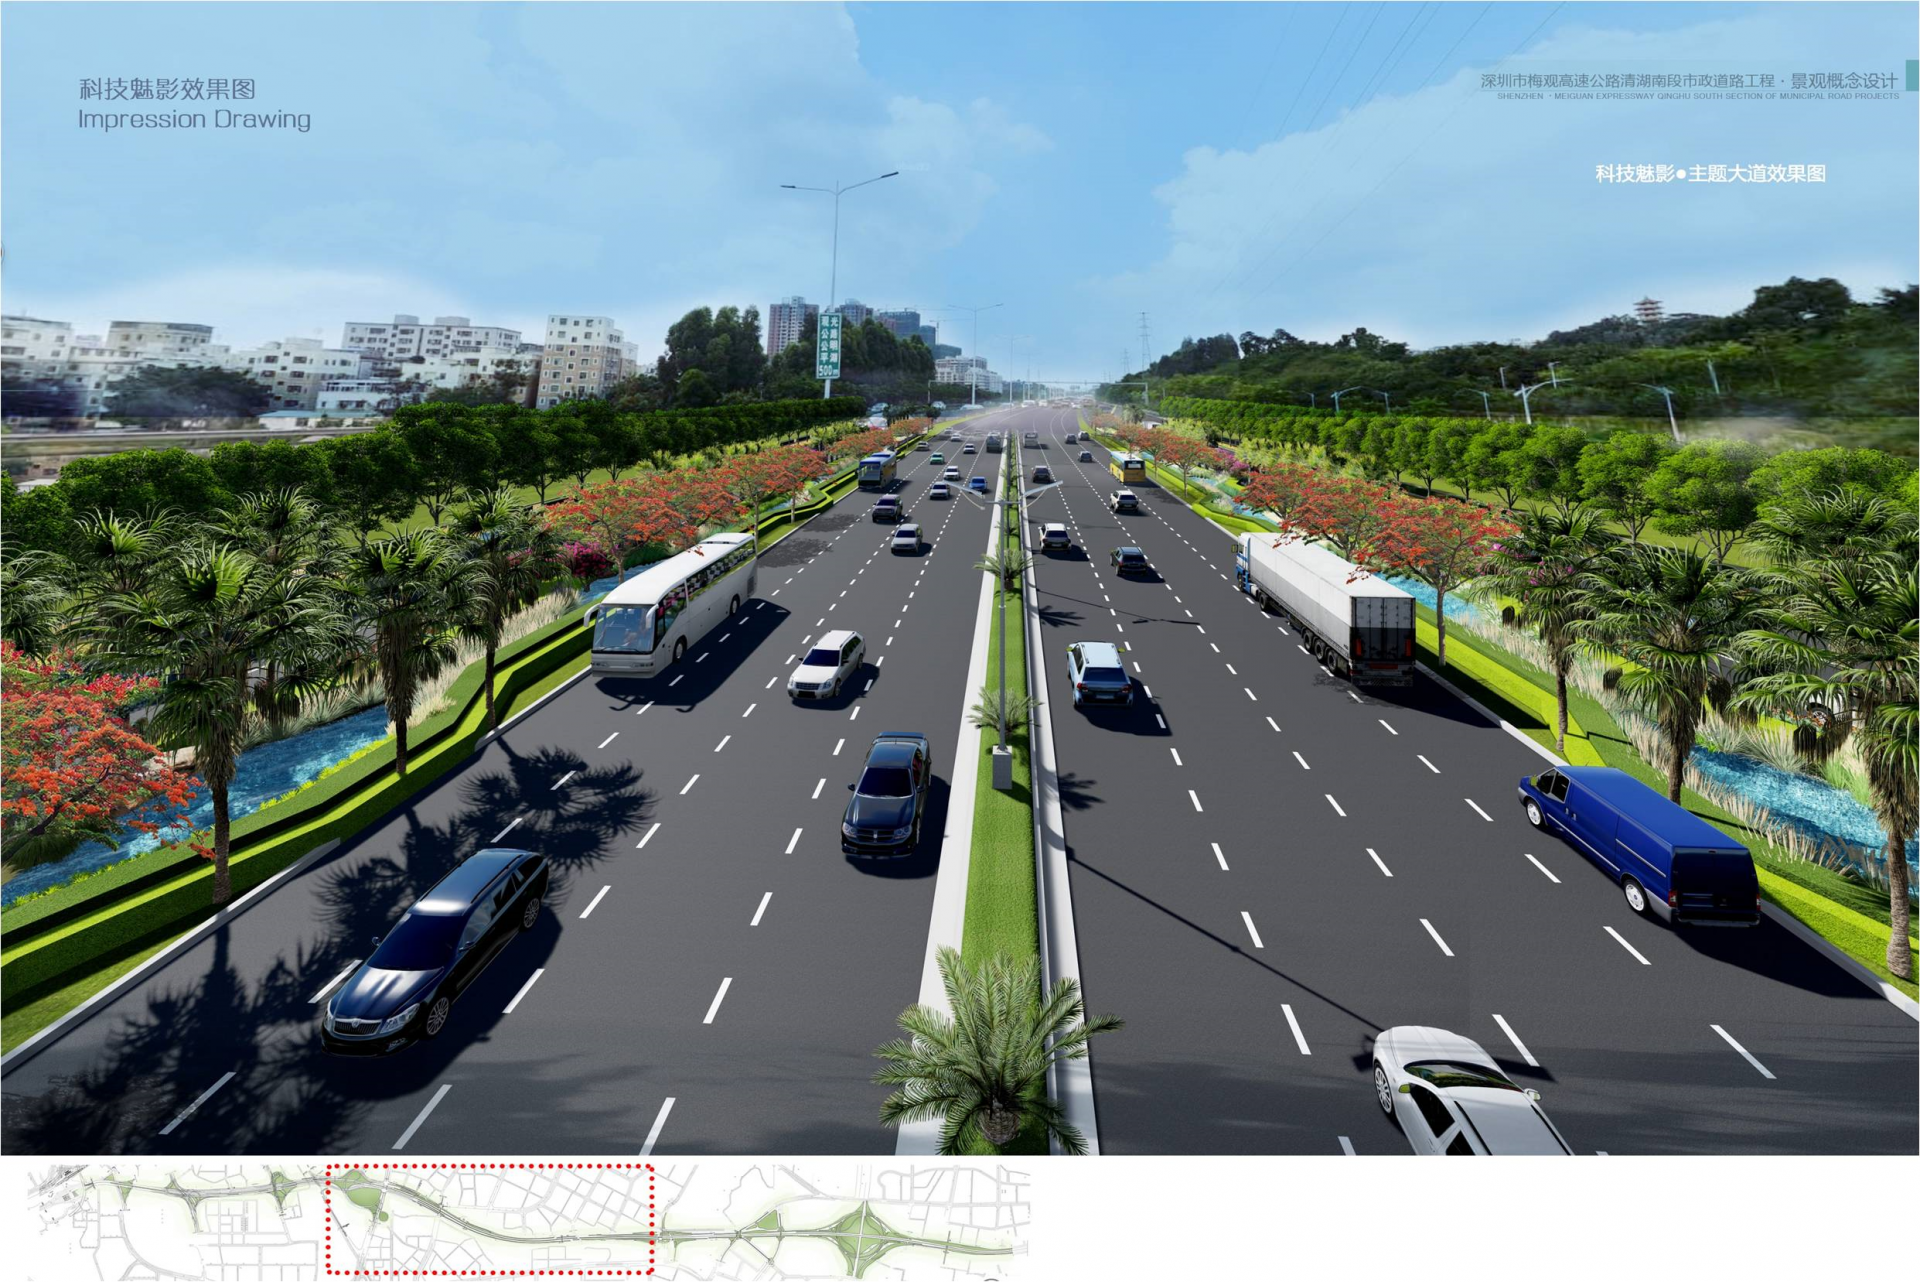 梅观高速路6车道扩建为14车道,地下配建综合管廊收纳城市管线